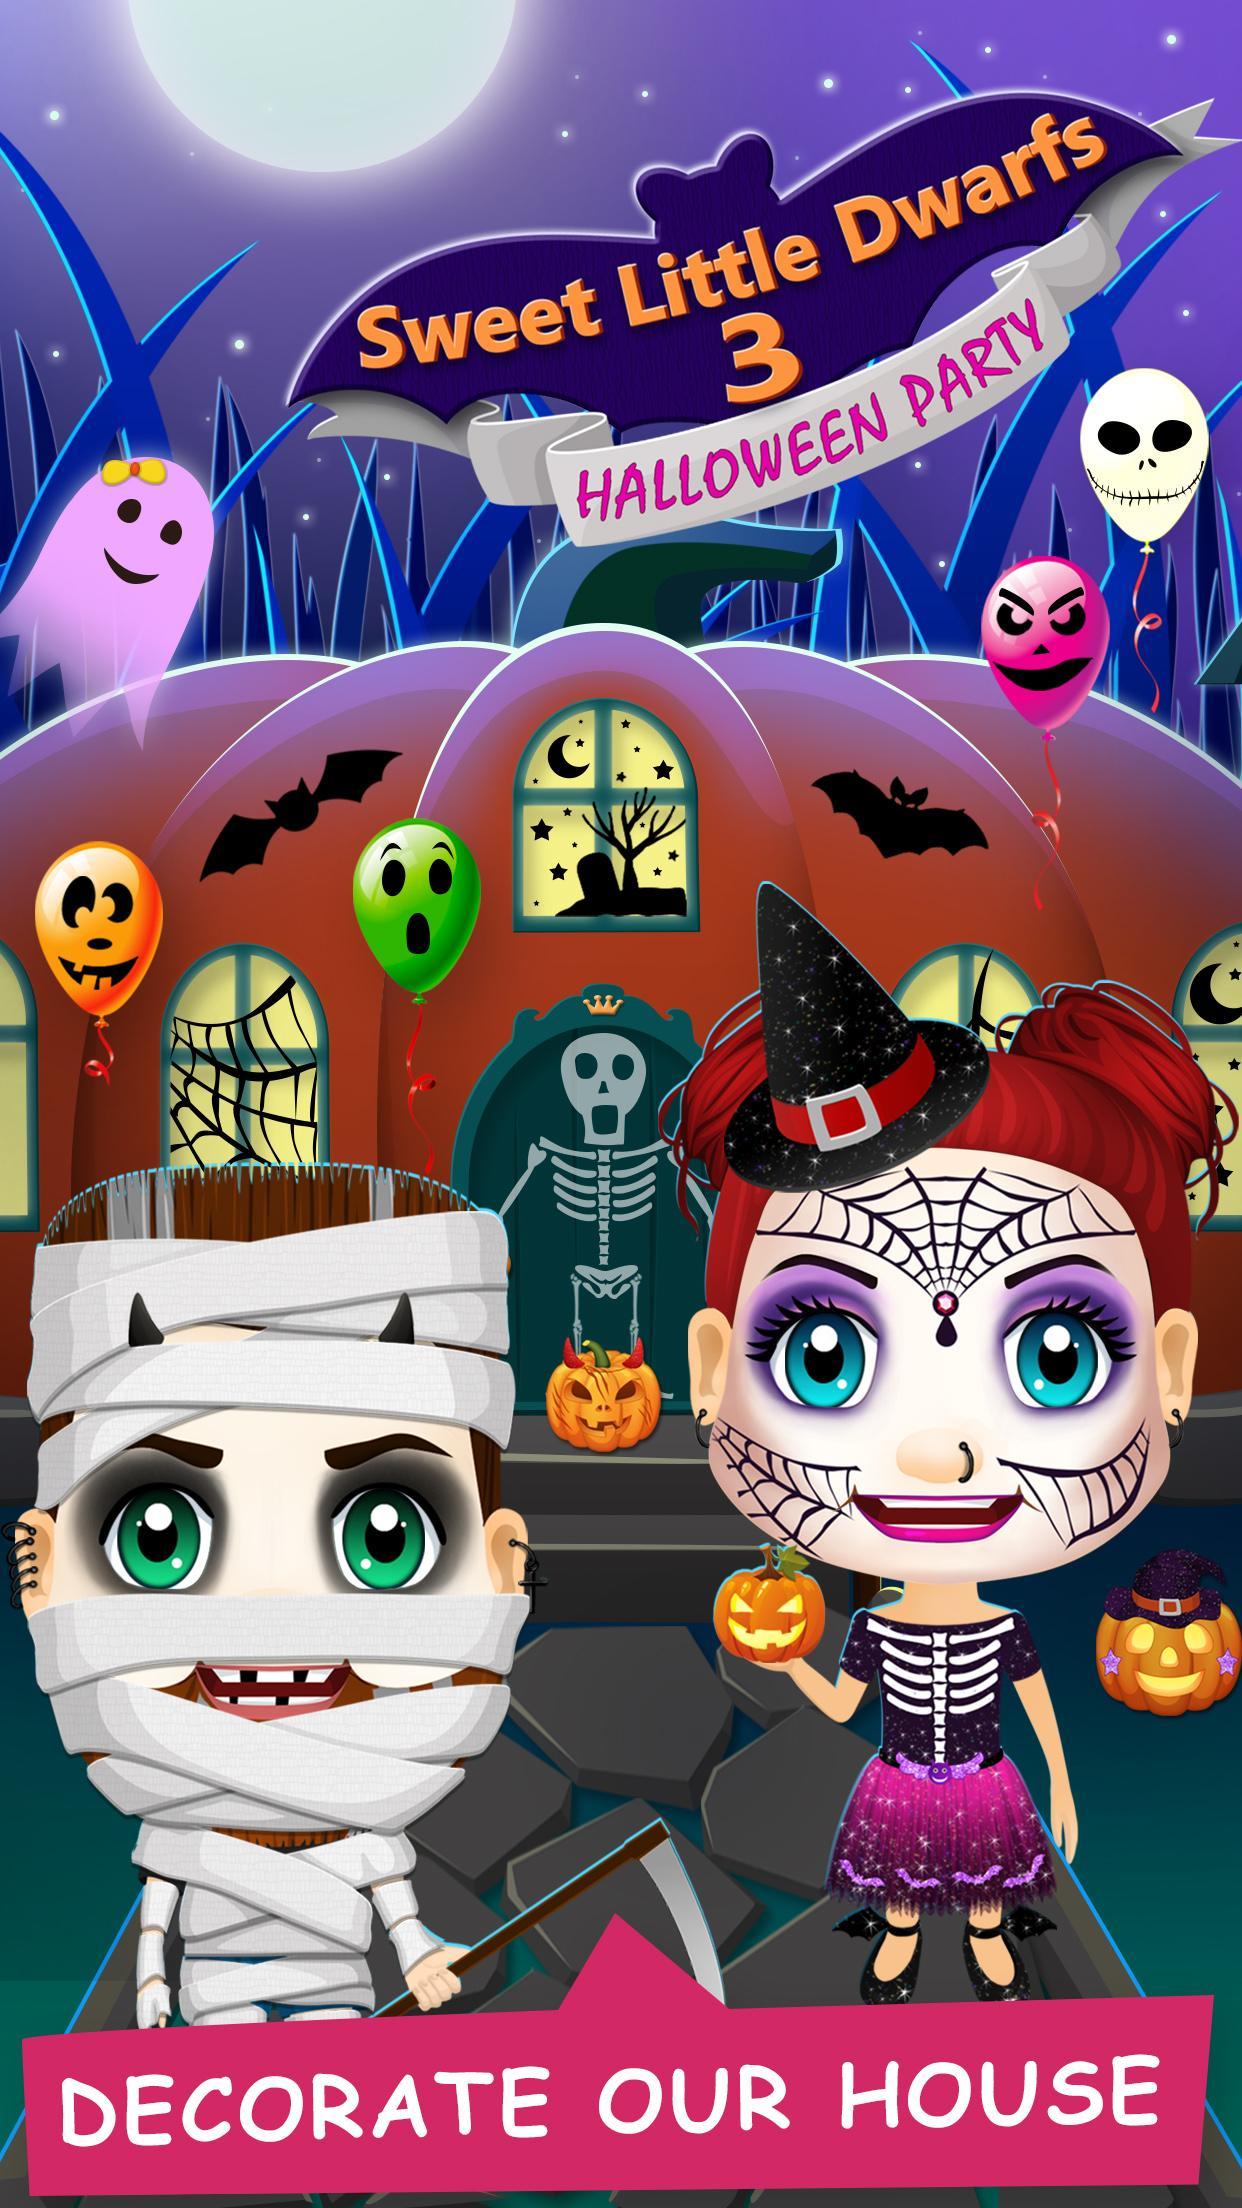 Sweet Little Dwarfs Halloween screenshot game